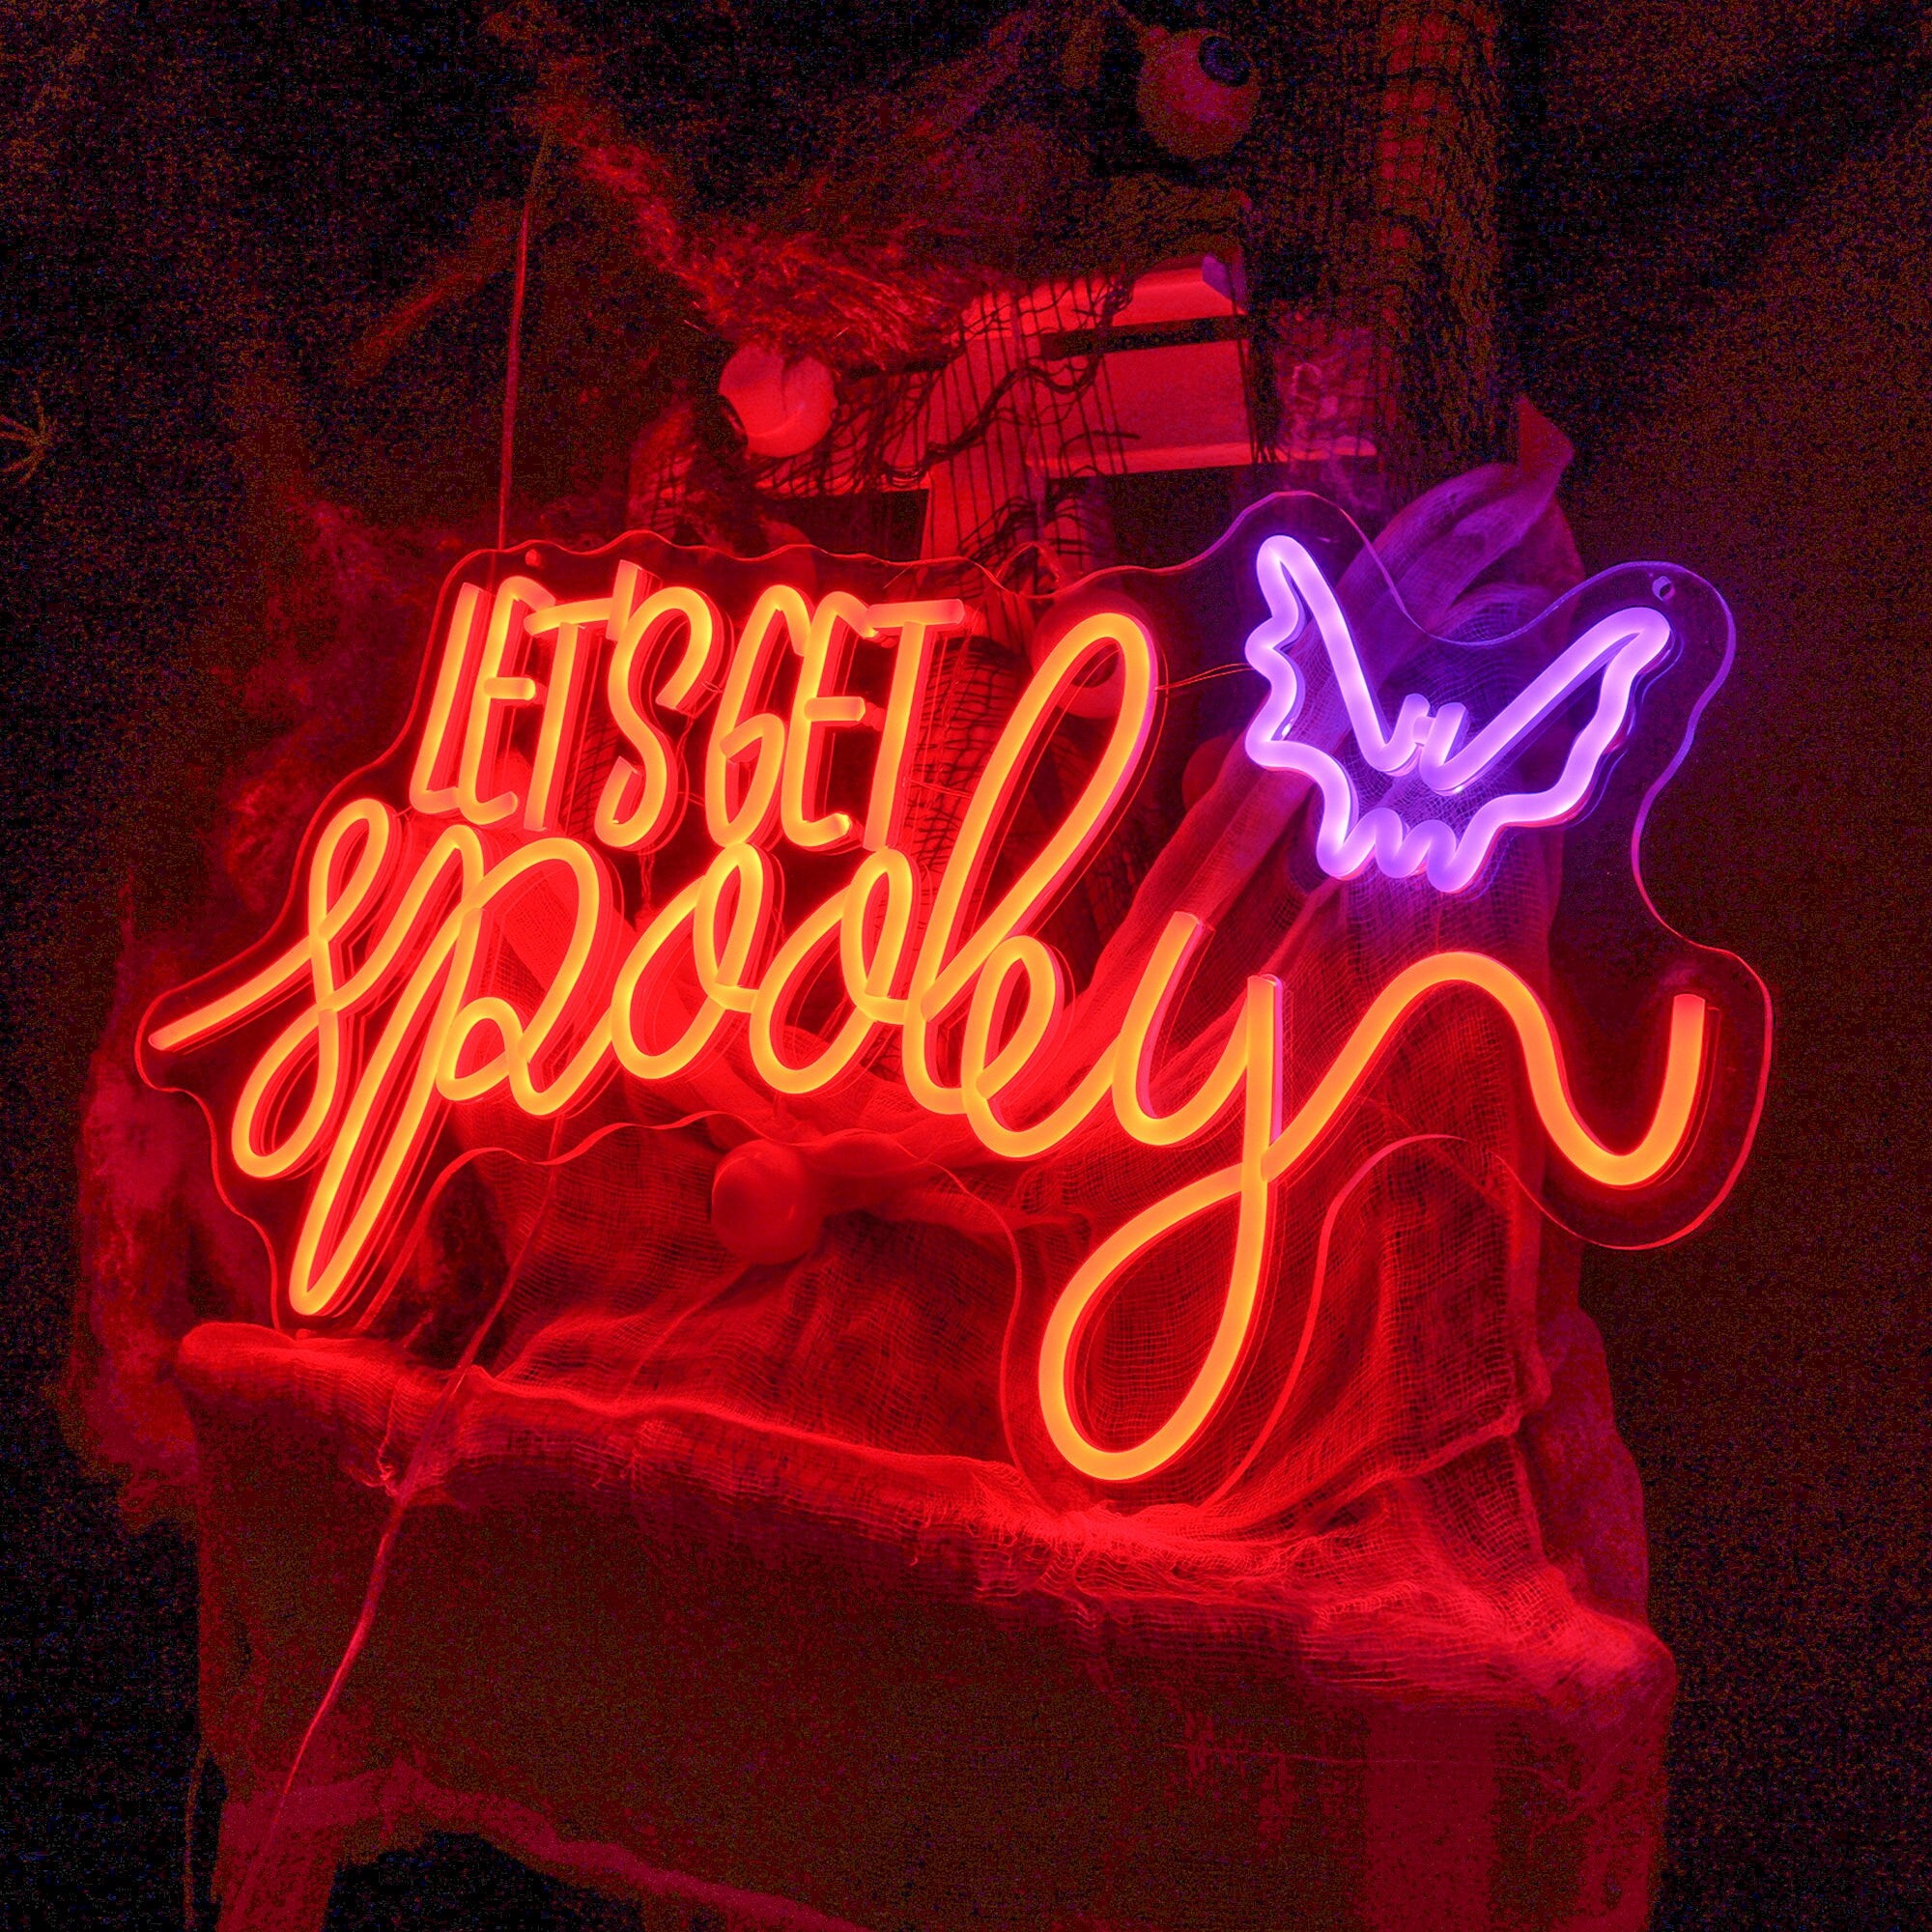 NEONIP-100% Handmade Let's Get Spooky Neon Sign Halloween Neon Sign